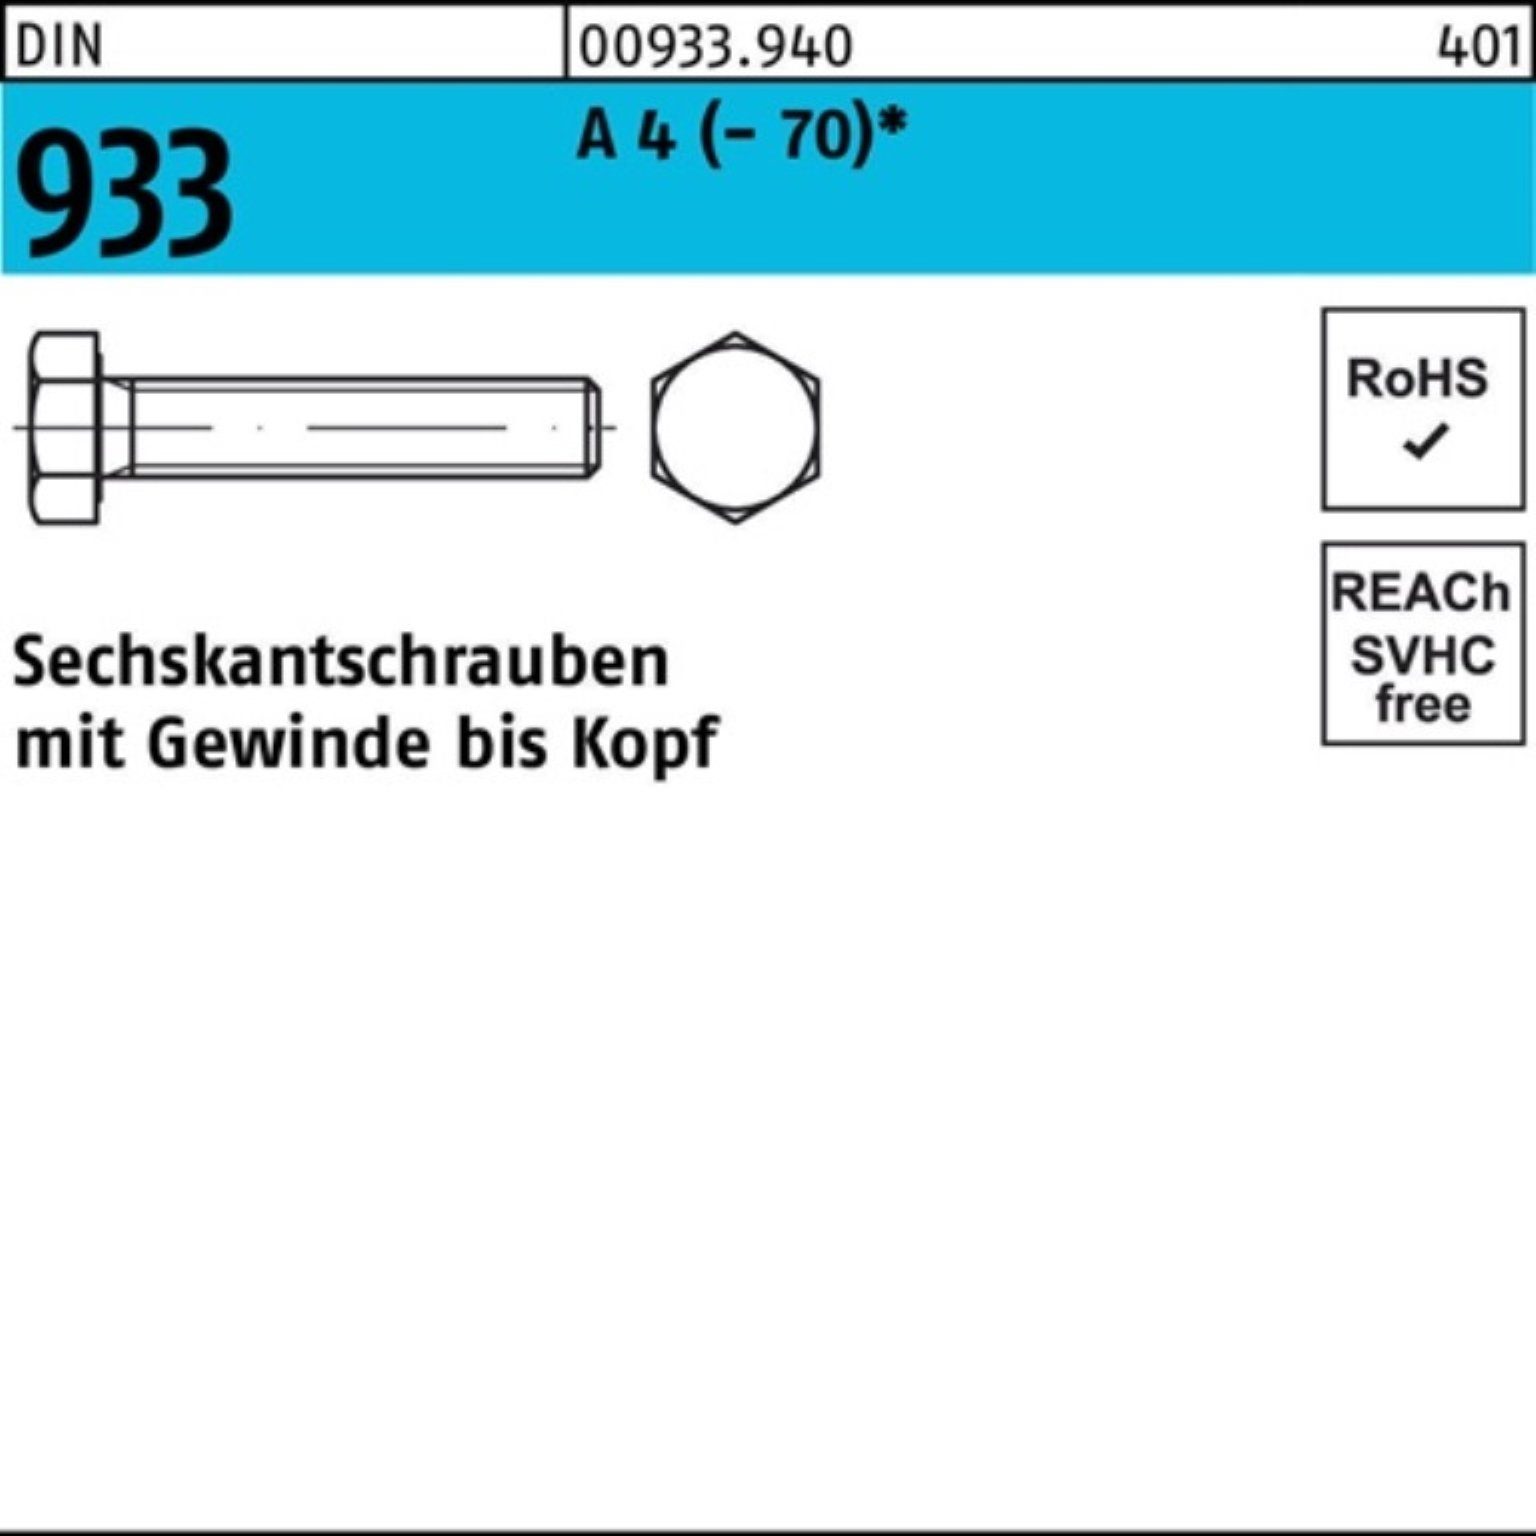 VG DI DIN 100er 1 Sechskantschraube Sechskantschraube Stück 933 M20x 90 Reyher (70) A 4 Pack